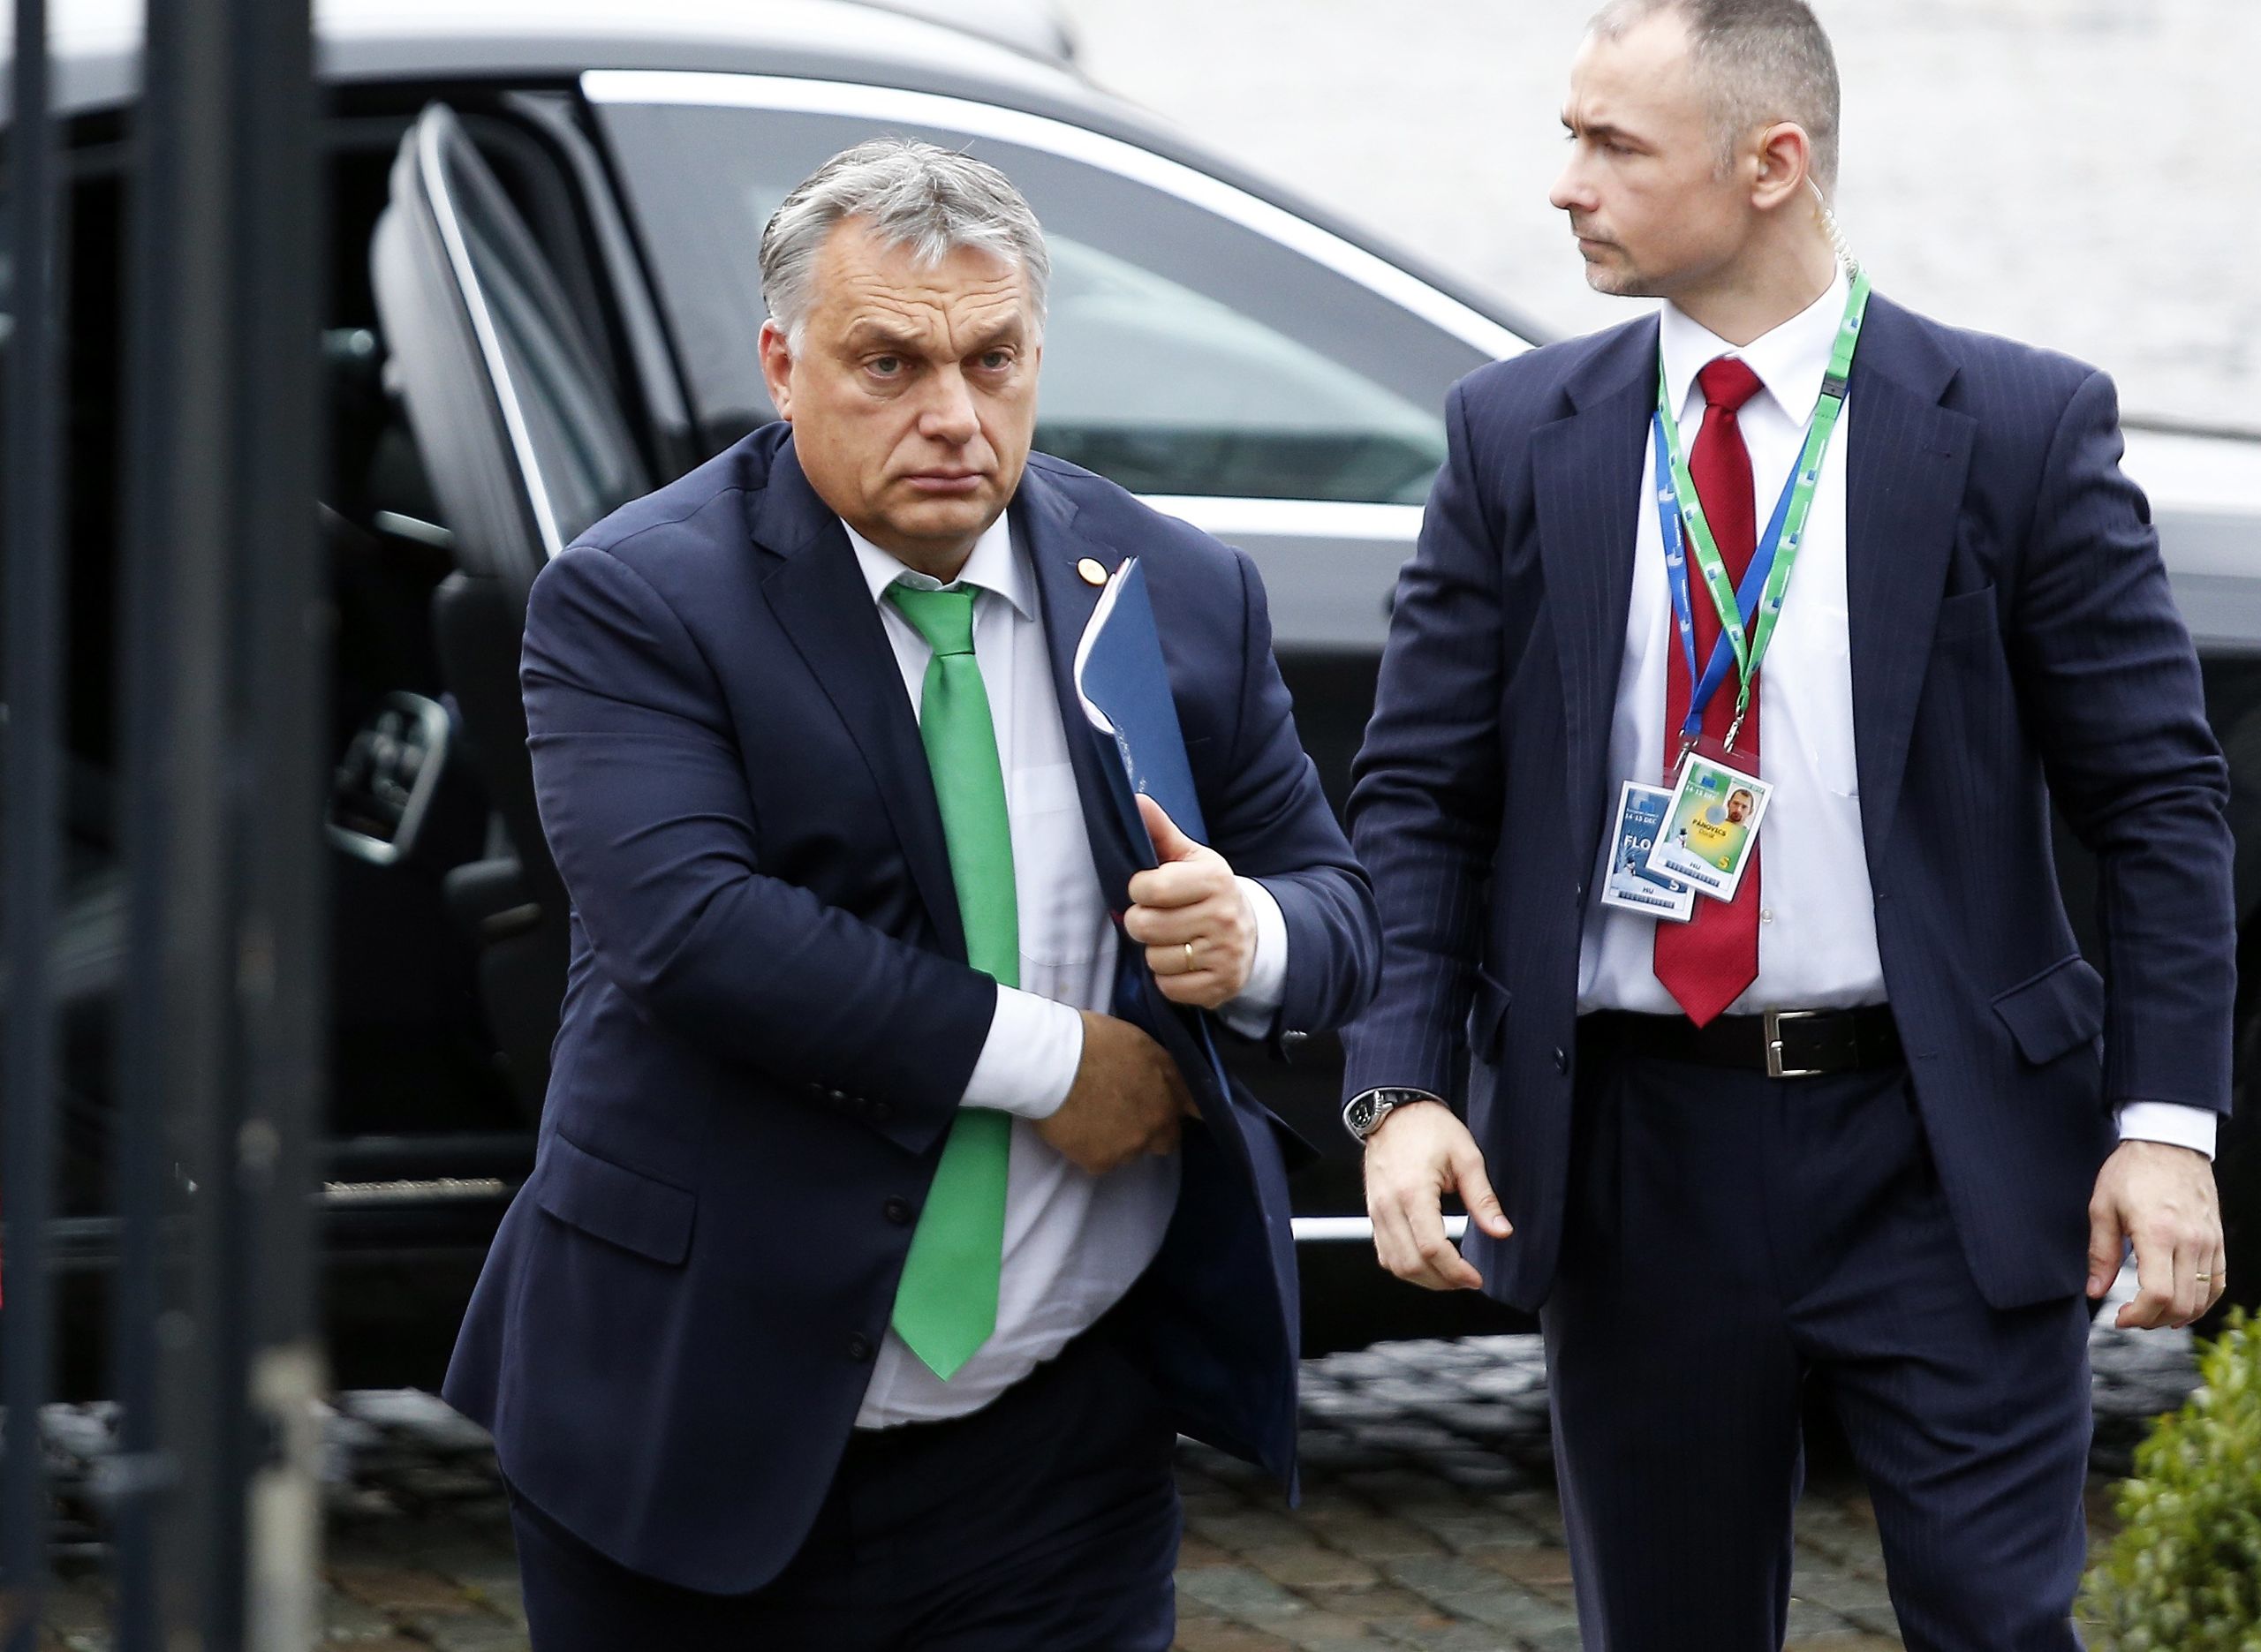 De Hongaarse premier Viktor Orban (L) komt aan in Brussel voor het overleg over onder meer migratie.